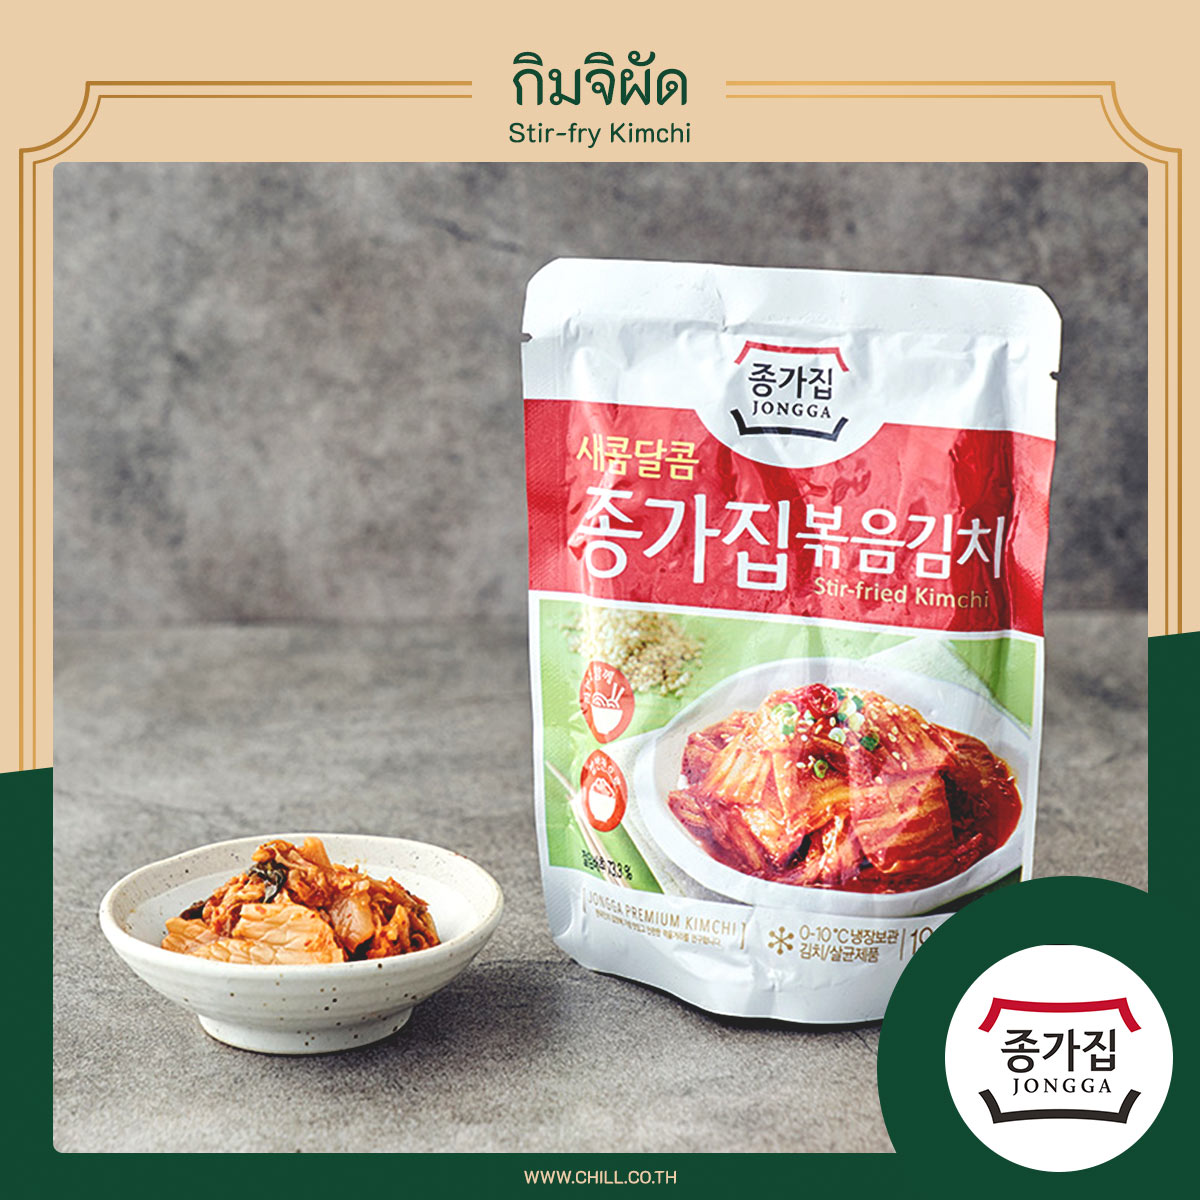 Stir-fry Kimchi